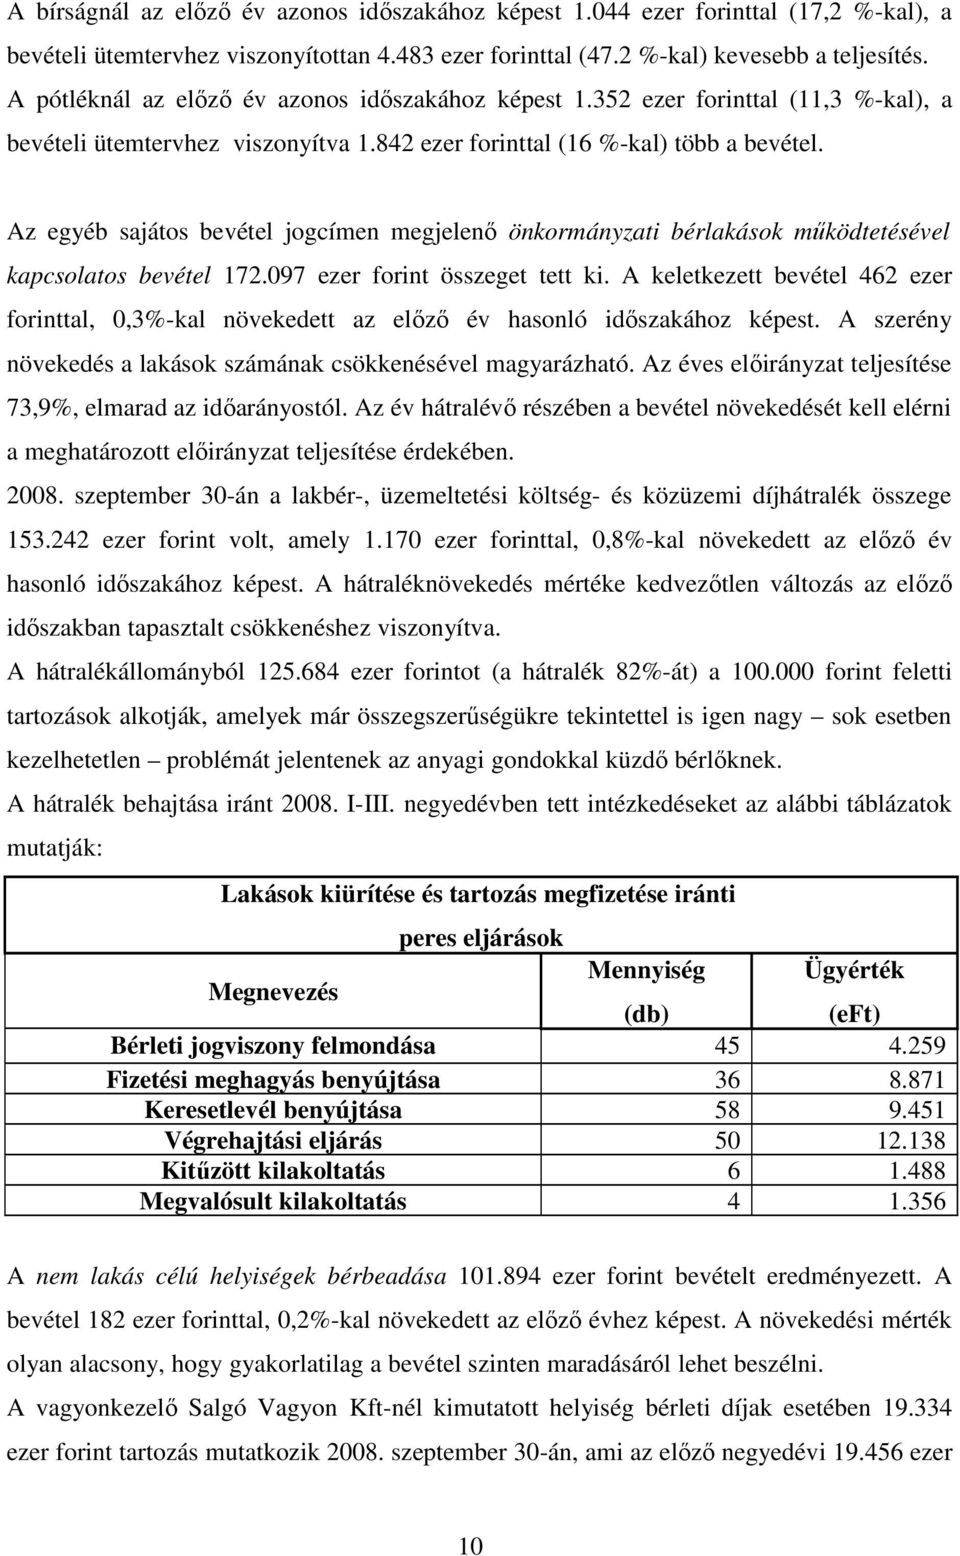 Az egyéb sajátos bevétel jogcímen megjelenı önkormányzati bérlakások mőködtetésével kapcsolatos bevétel 172.097 ezer forint összeget tett ki.